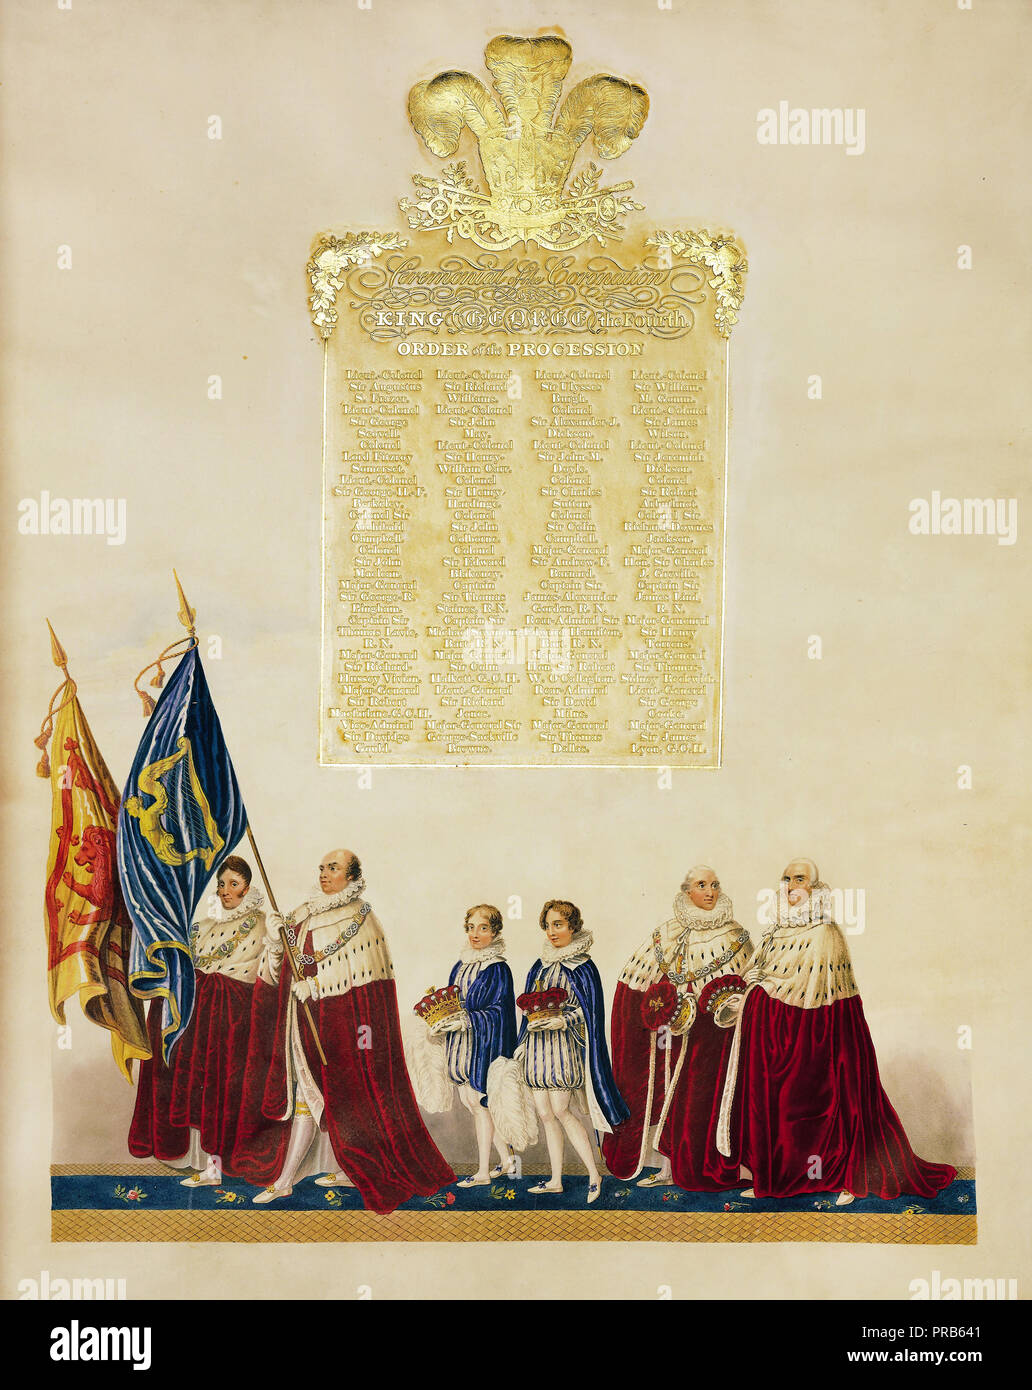 John Whittaker, cérémonial du couronnement du roi George IV 1823 Imprimé sur papier vélin, le Japon Collection Royale du Royaume-Uni. Banque D'Images